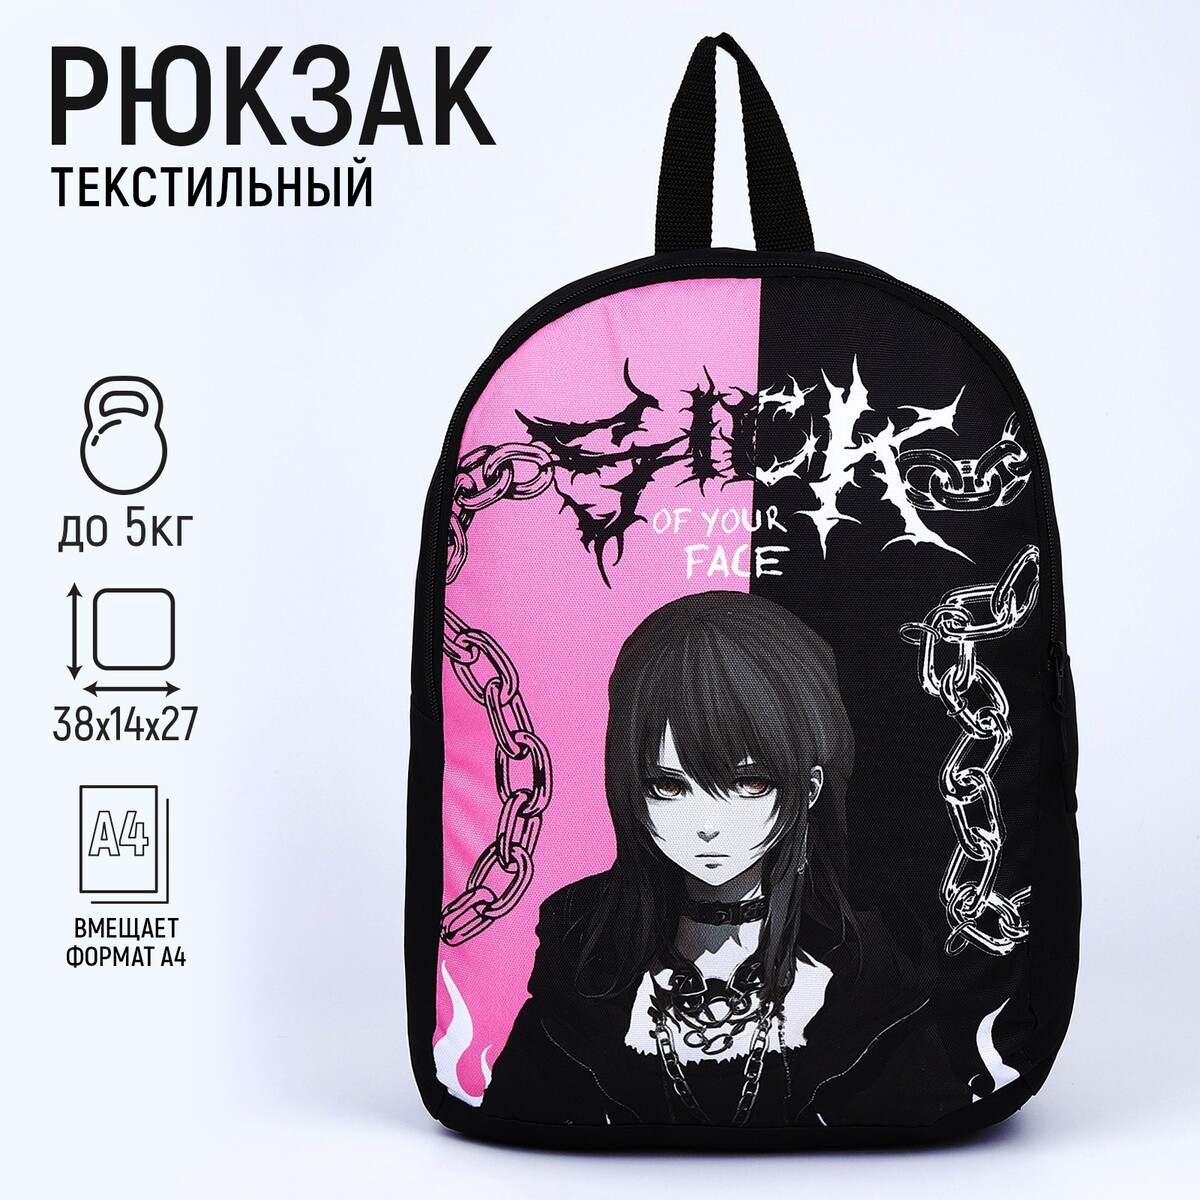 Рюкзак текстильный аниме, 38х14х27 см, цвет черный, розовый рюкзак текстильный котик в костюме 38х14х27 см